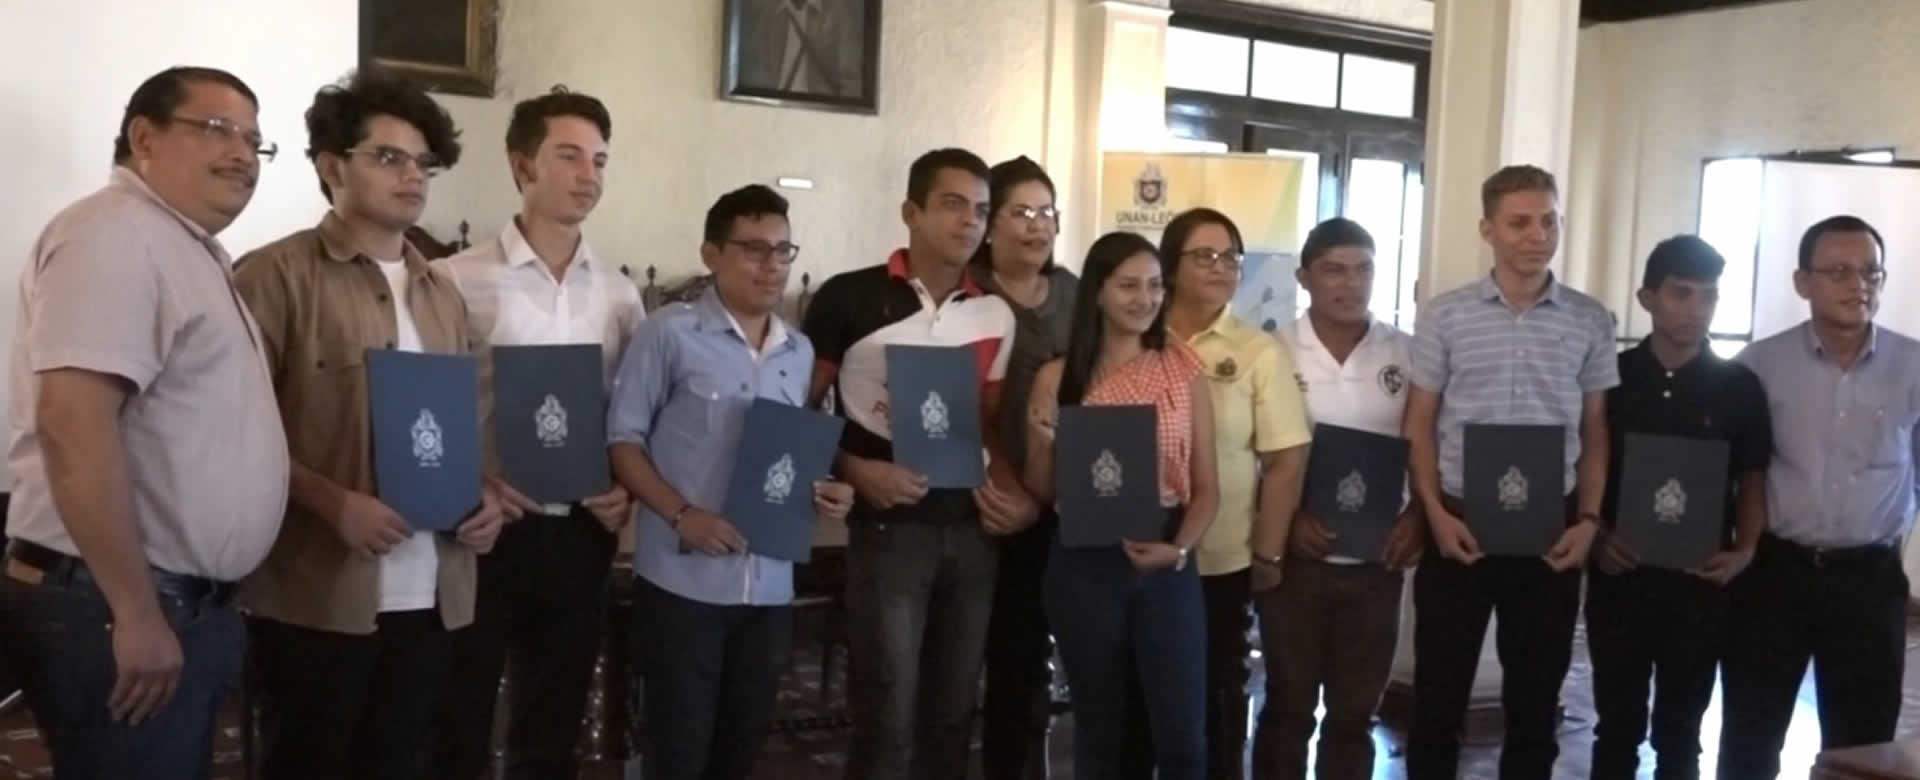 Miles de bachilleres aprueban examen de admisión en la UNAN-León